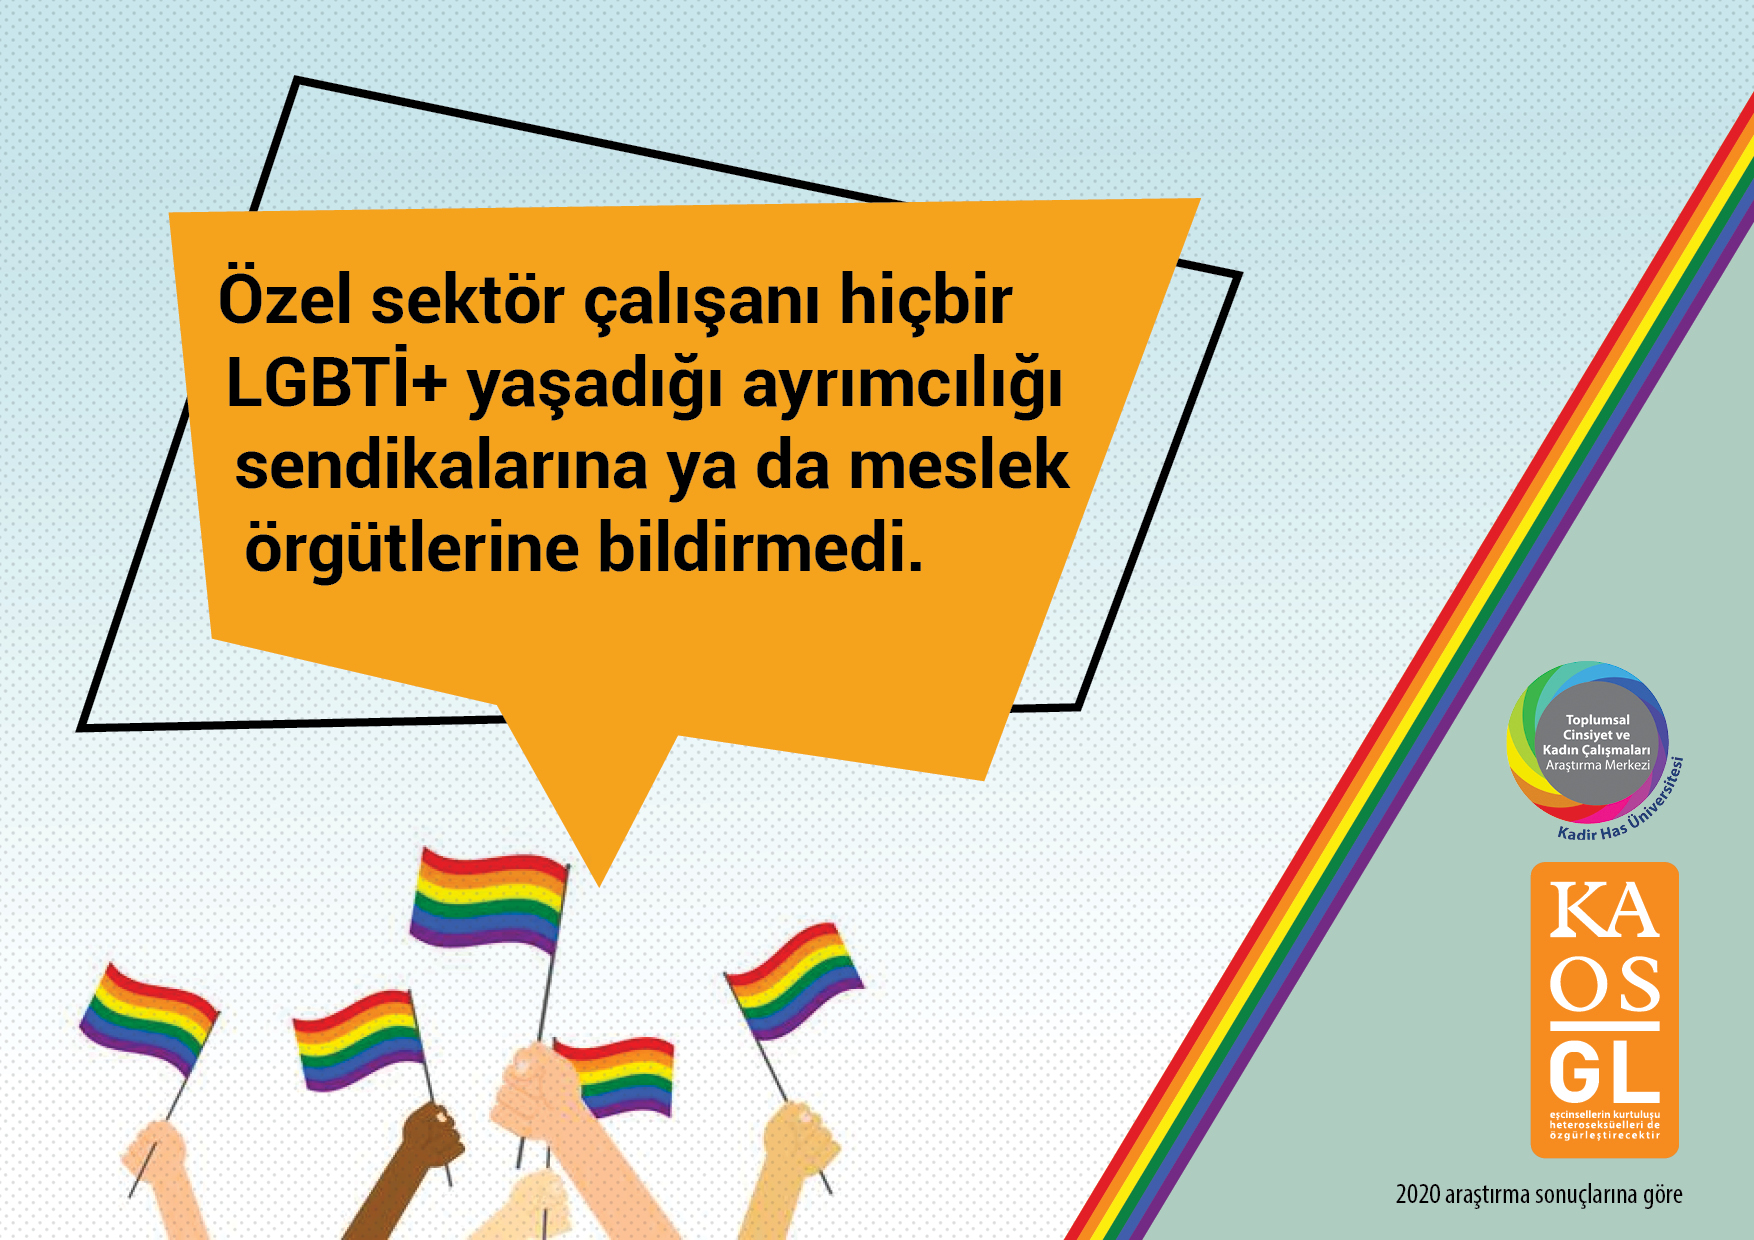 “LGBTİ+’ların ekonomik ve sosyal hakları sendikaların önceliği değil” | Kaos GL - LGBTİ+ Haber Portalı Haber